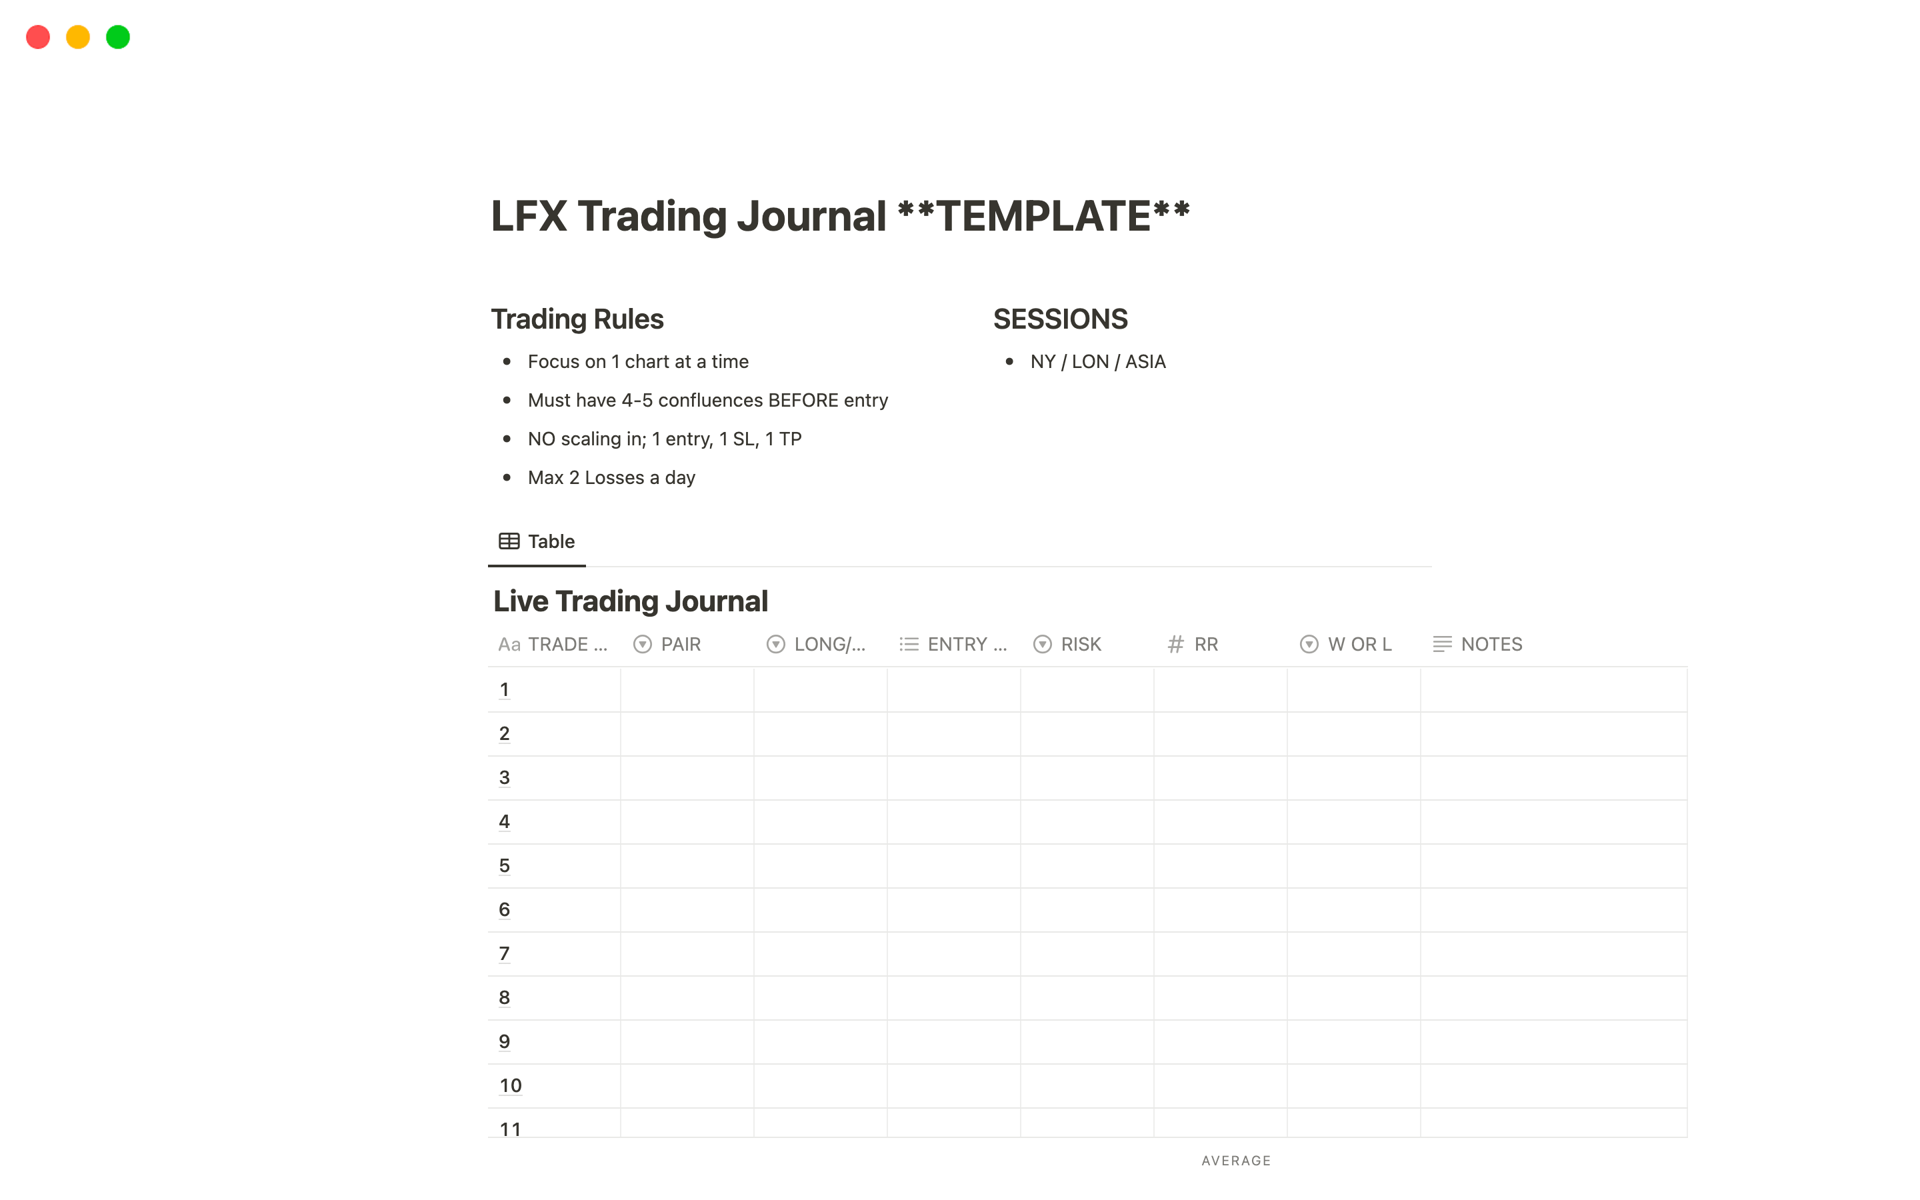 Vista previa de una plantilla para LFX Trading Journal